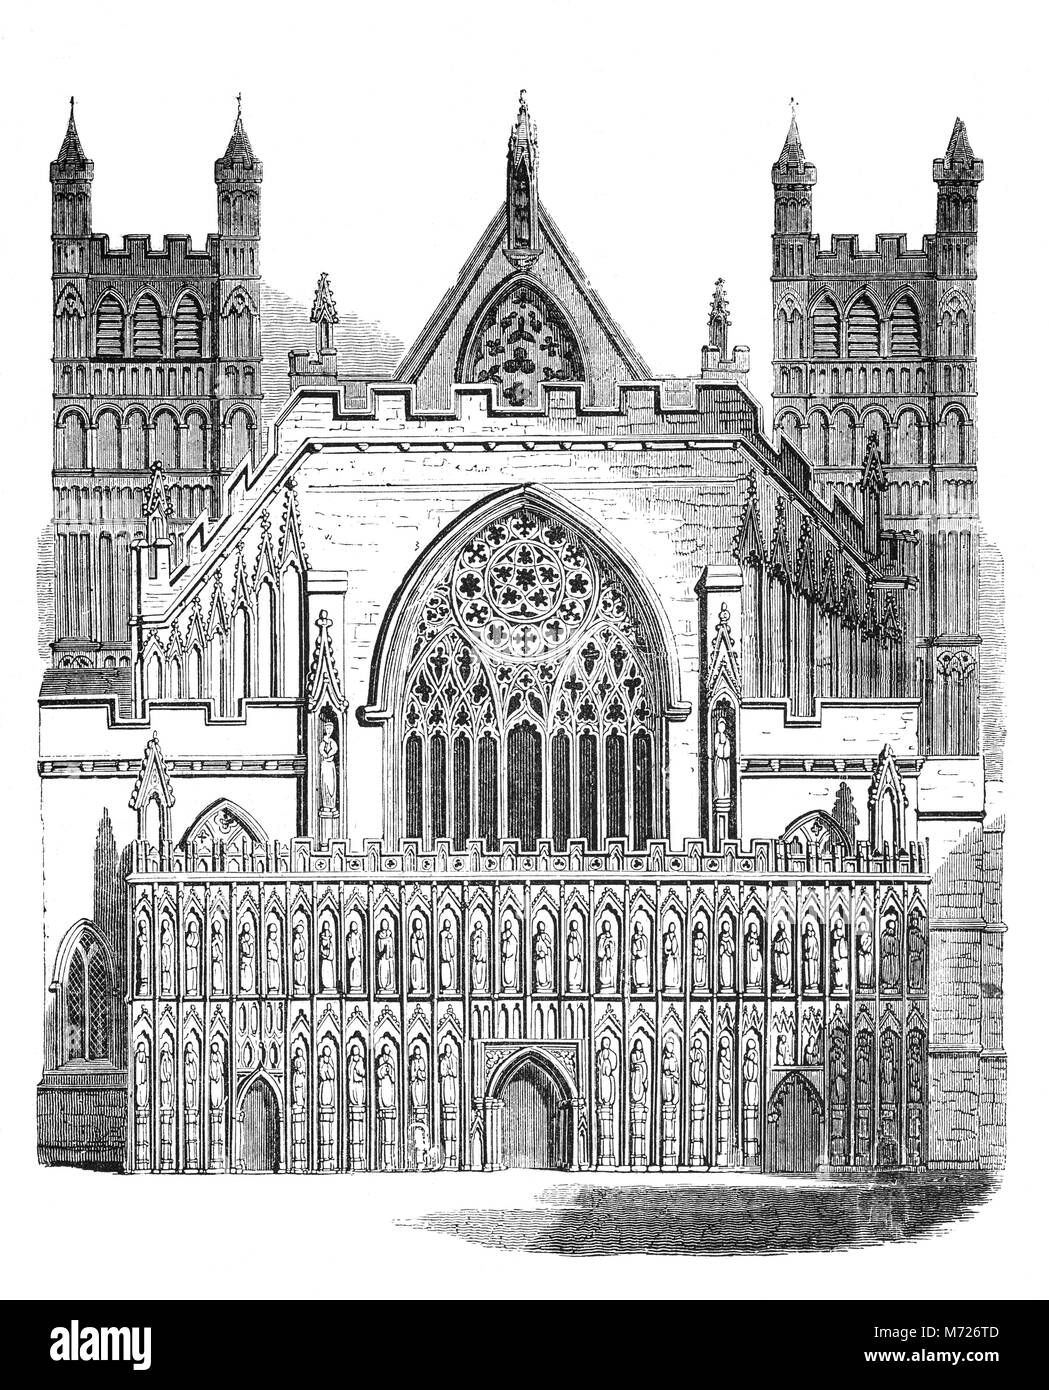 Il fronte ovest schermata Immagine della Cattedrale di Exeter è una delle grandi caratteristiche architettoniche medievali di Inghilterra. La schermata immagine ha segnato il completamento della ricostruzione della cattedrale in stile gotico intorno al 1340. La presente anglicana Cattedrale di Exeter si trova nella città di Exeter Devon, nel sud ovest dell'Inghilterra. Foto Stock